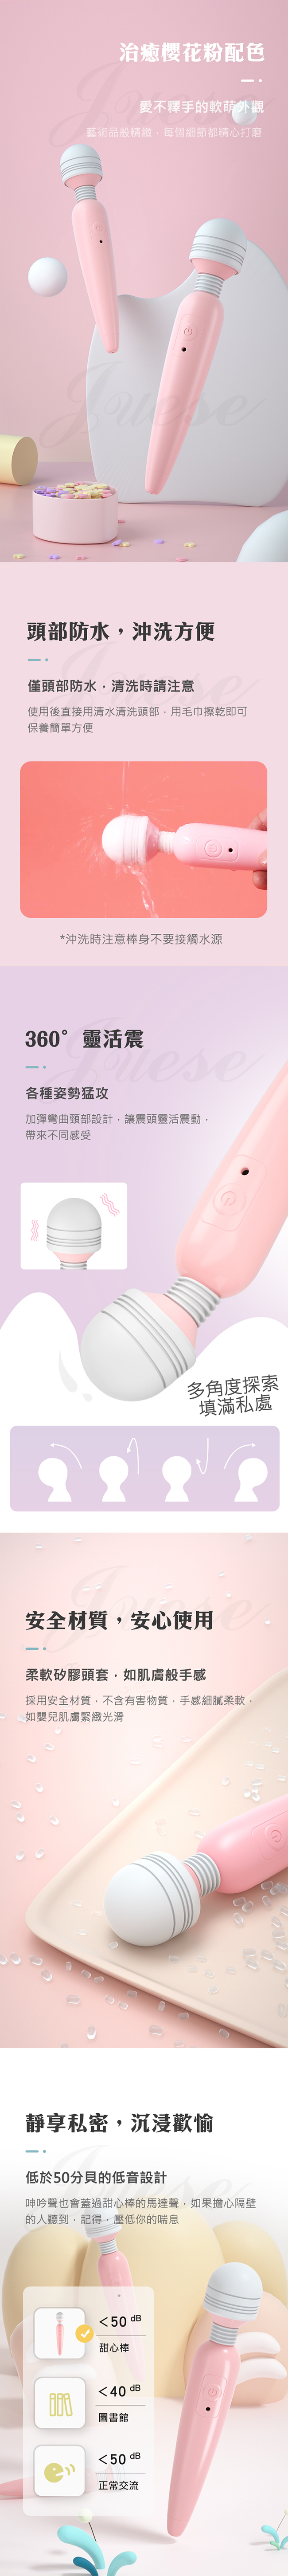 甜心 10段變頻震動USB充電矽膠按摩棒-櫻花粉(特)